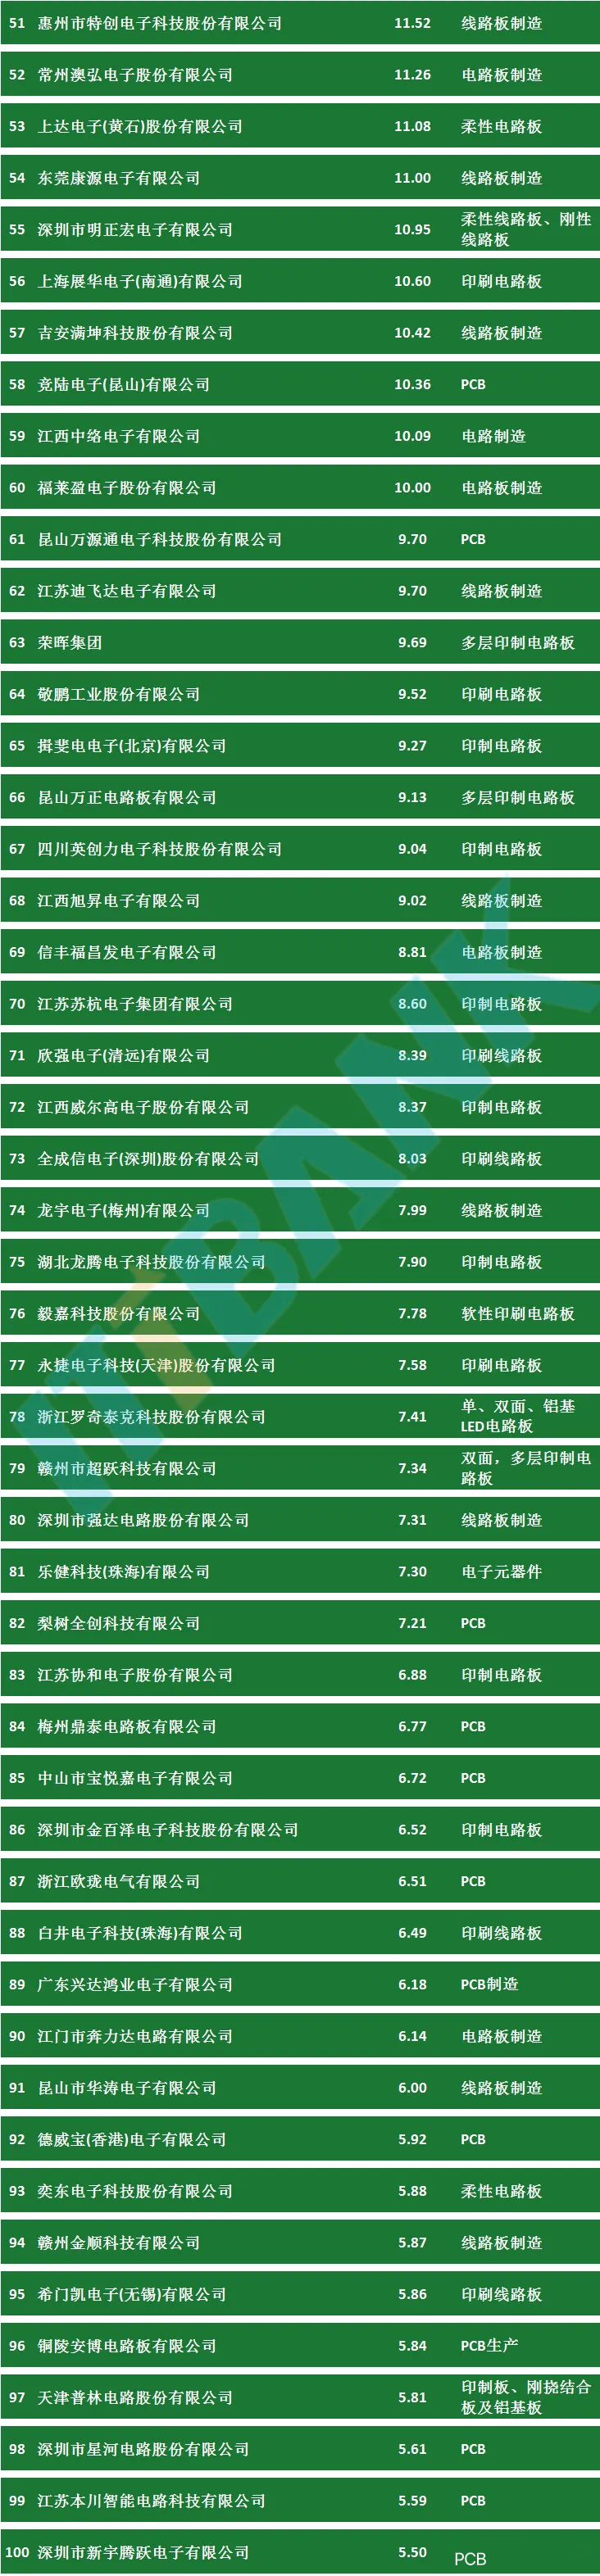 中国pcb百强企业排行榜